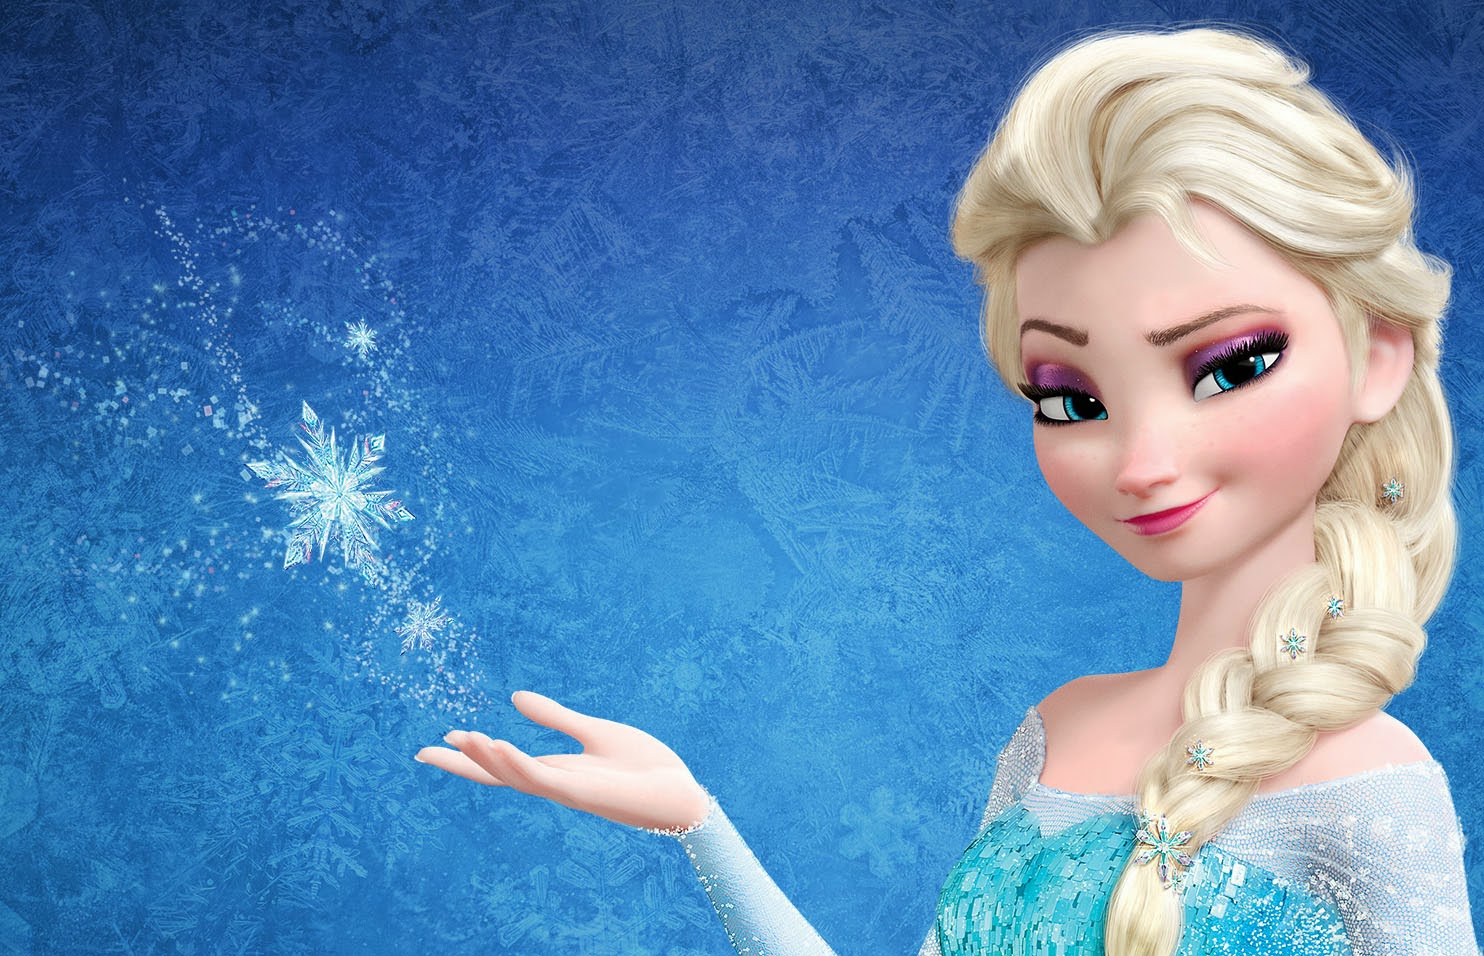 Snow Queen Elsa In Frozen Wide   1484x956 iWallHD   Wallpaper HD 1484x956